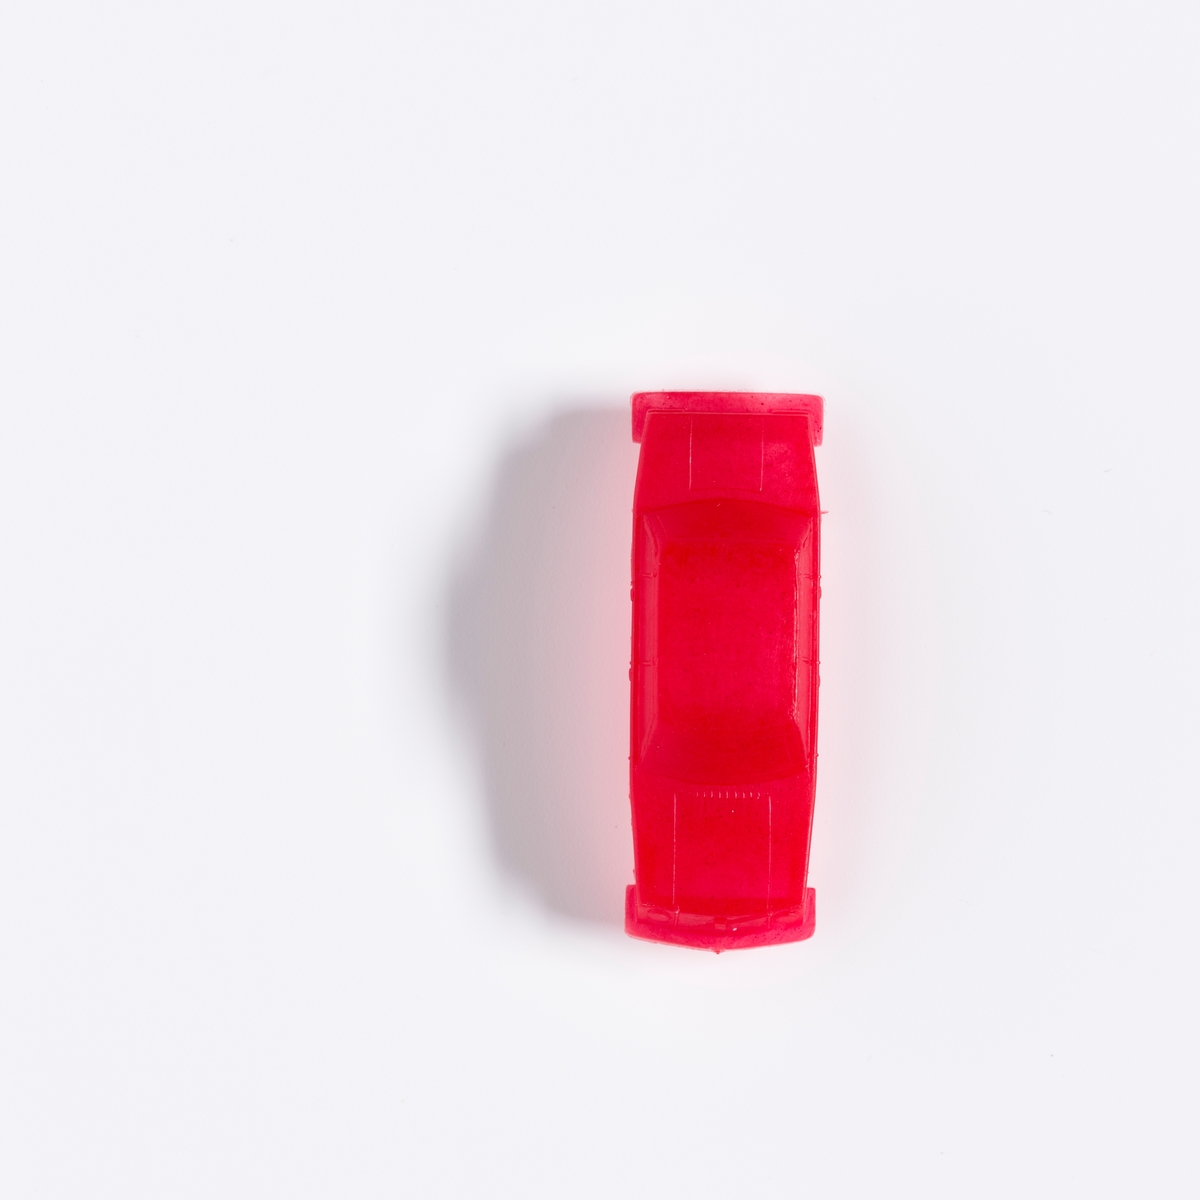 En spillbrikke i rød plast formet som en bil. 

Brettspillet fungerer på samme måten som spillet Monopol. Her er spillet plassert i Skedsmo kommune og man kan kjøpe lokale firmaer og butikker. Spillet er produsert av Strømmen menighet i samarbeid med Tria-Aktiv. Overskuddet fra salget gikk til ungdomsaktiviteter.